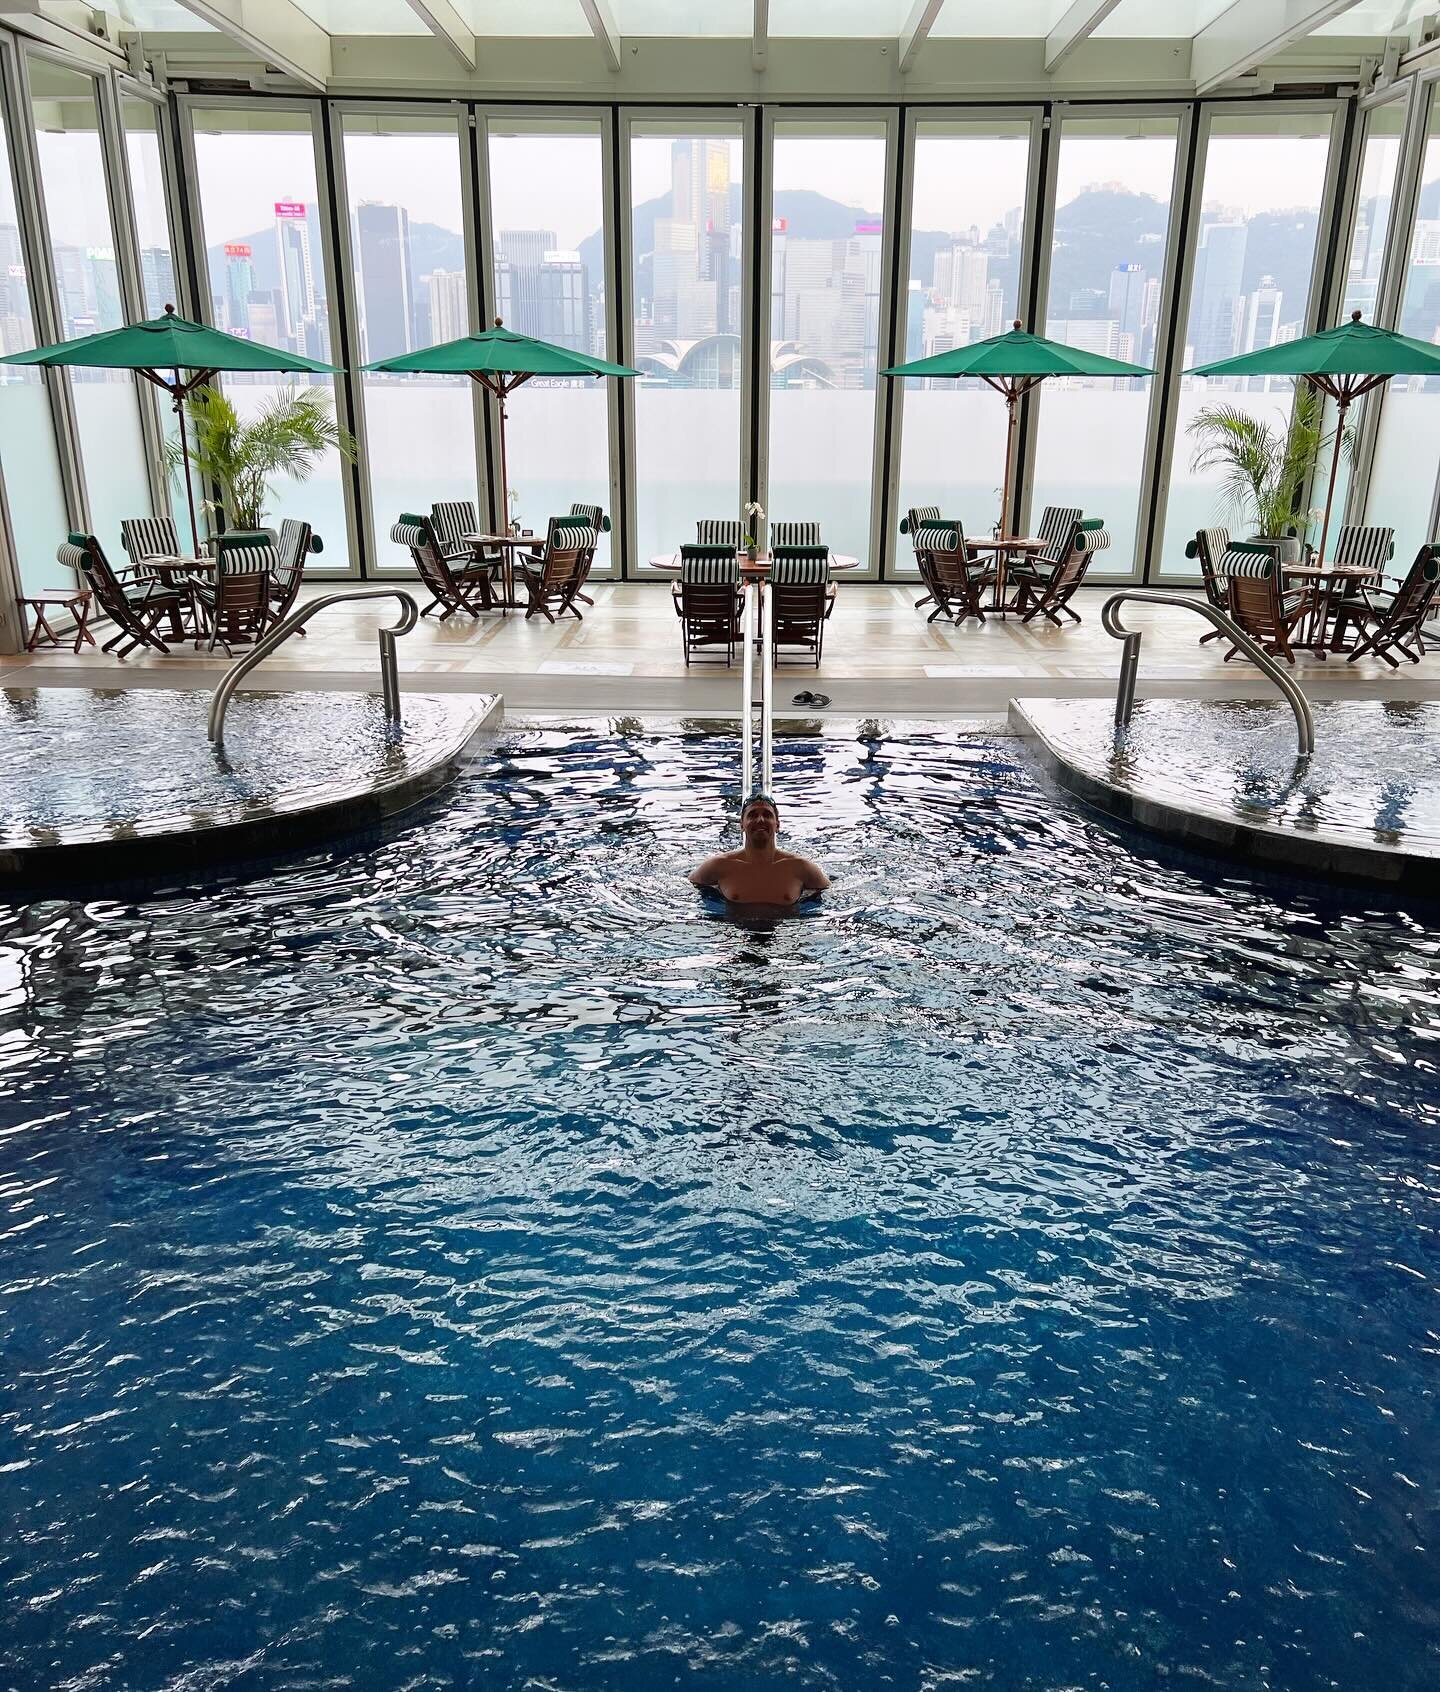 Pool time at @peninsulahongkong 💦 
#PenMoments #PoolLife #PeninsulaHongKong #PeninsulaHotels #HongKongPool #HongKongView #LuxuryTravel #PoolWithAView #HongKong